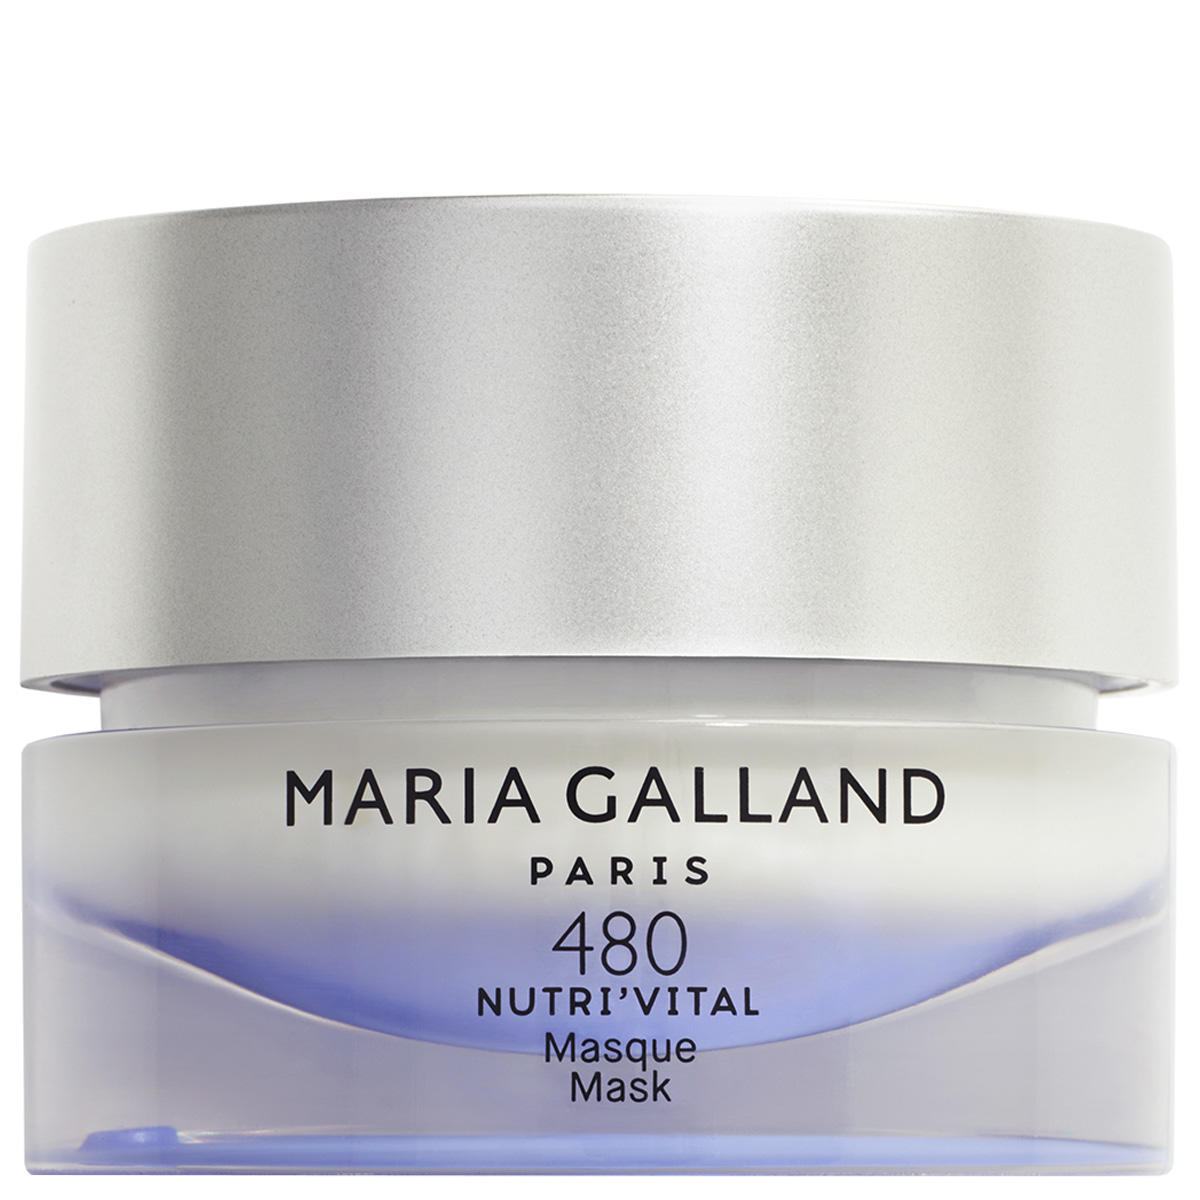 Maria Galland NUTRI’VITAL 480 Masque 50 ml - 1